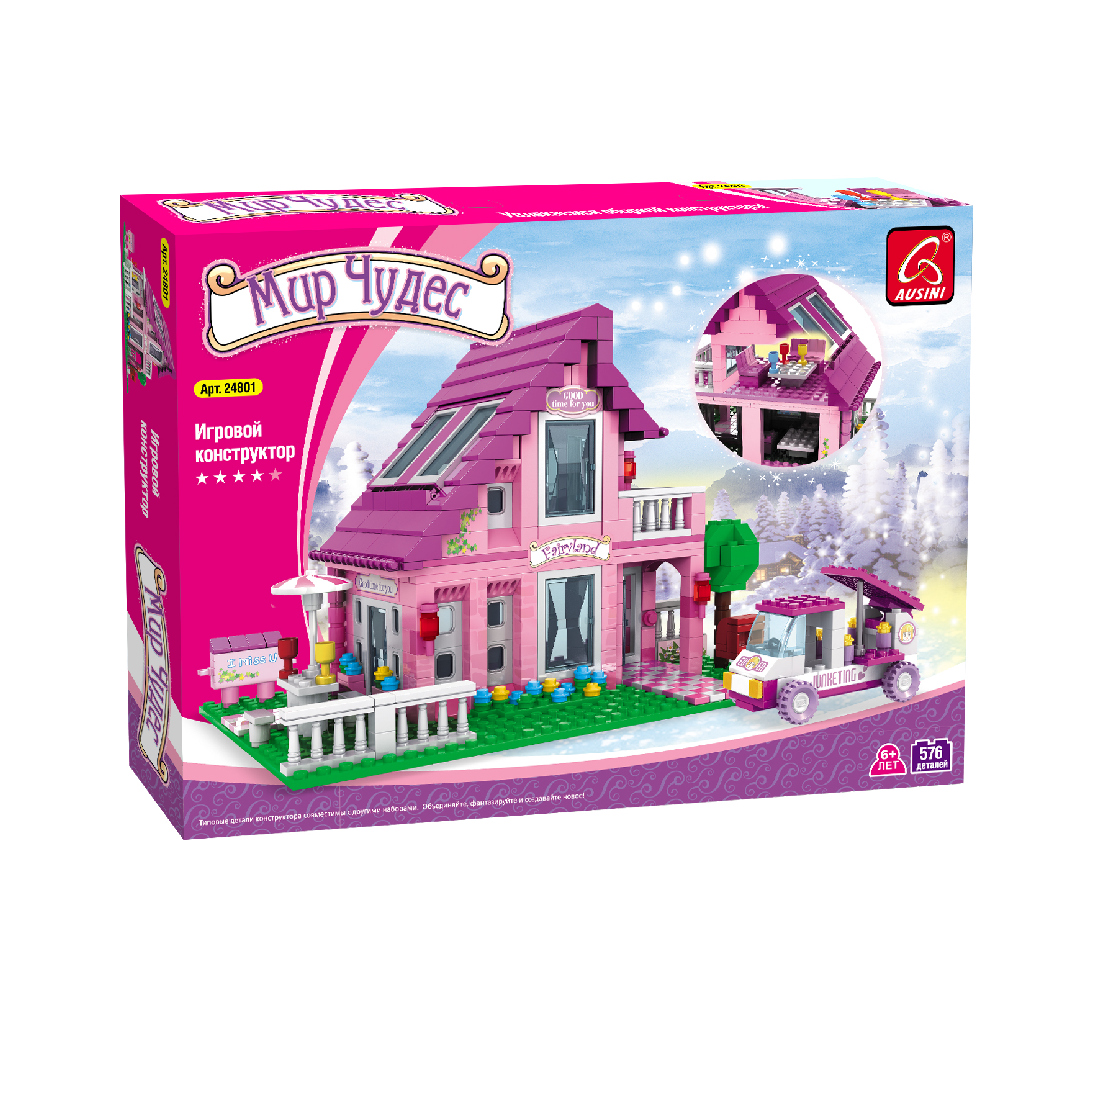 купить Игровой конструктор, Ausini, 24801, Мир Чудес, Розовый домик, 576 деталей, Цветная коробка в Алматы